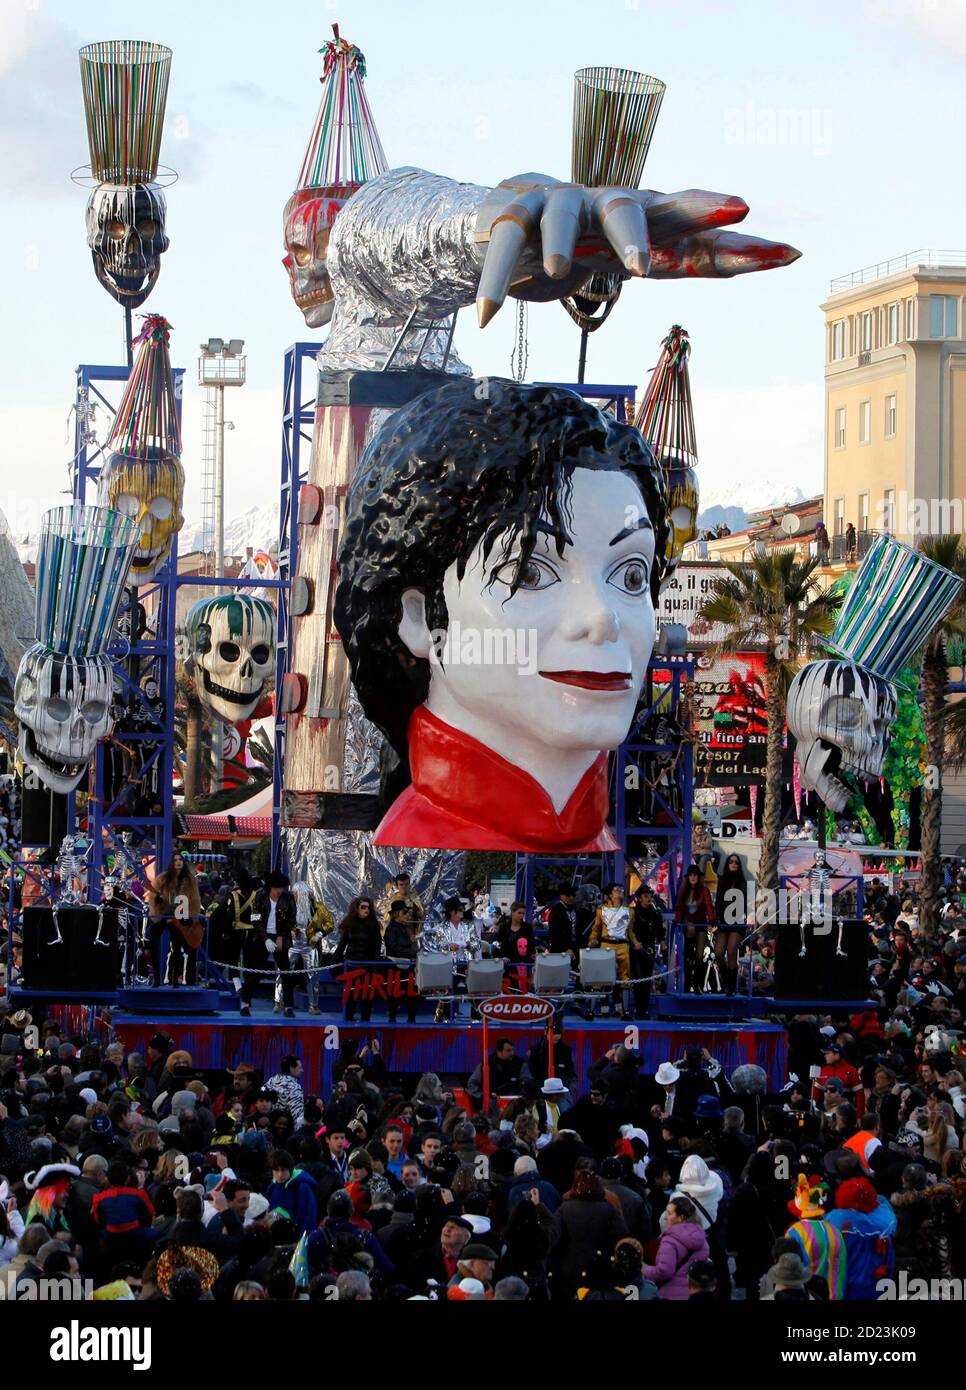 Concurreren fascisme Archeologisch La légende pop Michael Jackson est représentée sur un flotteur lors d'un  défilé de carnaval à Viareggio, dans le nord de l'Italie, le 31 janvier  2010. REUTERS/Marco Bucco (ITALIE - Tags: SOCIÉTÉ